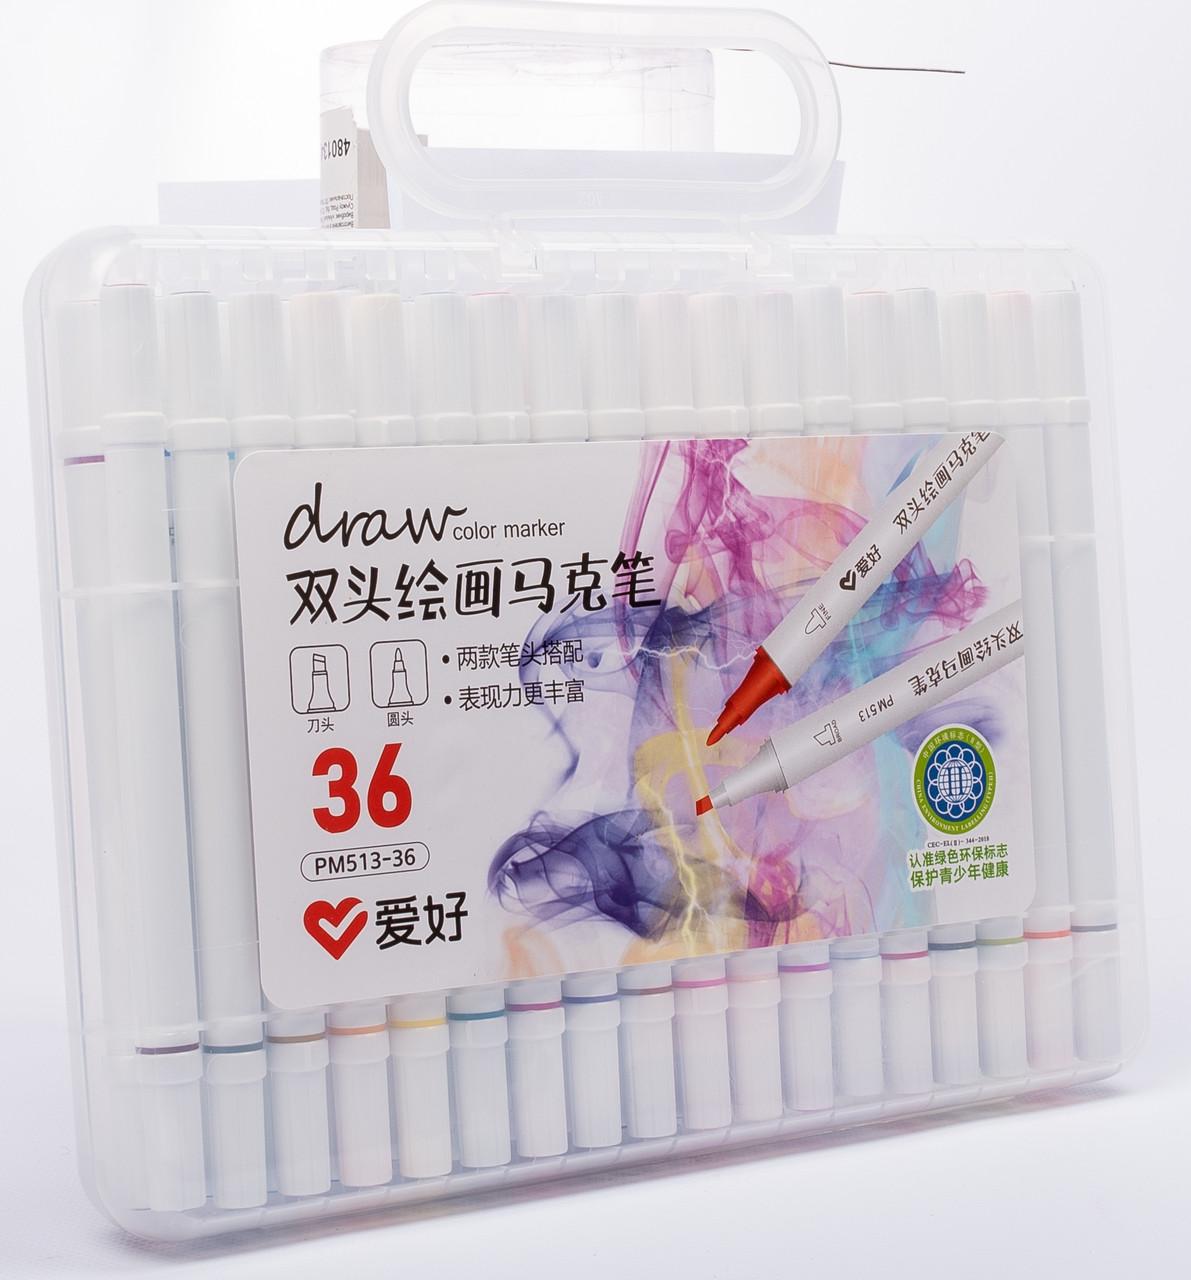 Набор скетч маркеров Aihao sketchmarker slim для рисования двухсторонних 36 шт. (PM513-36)